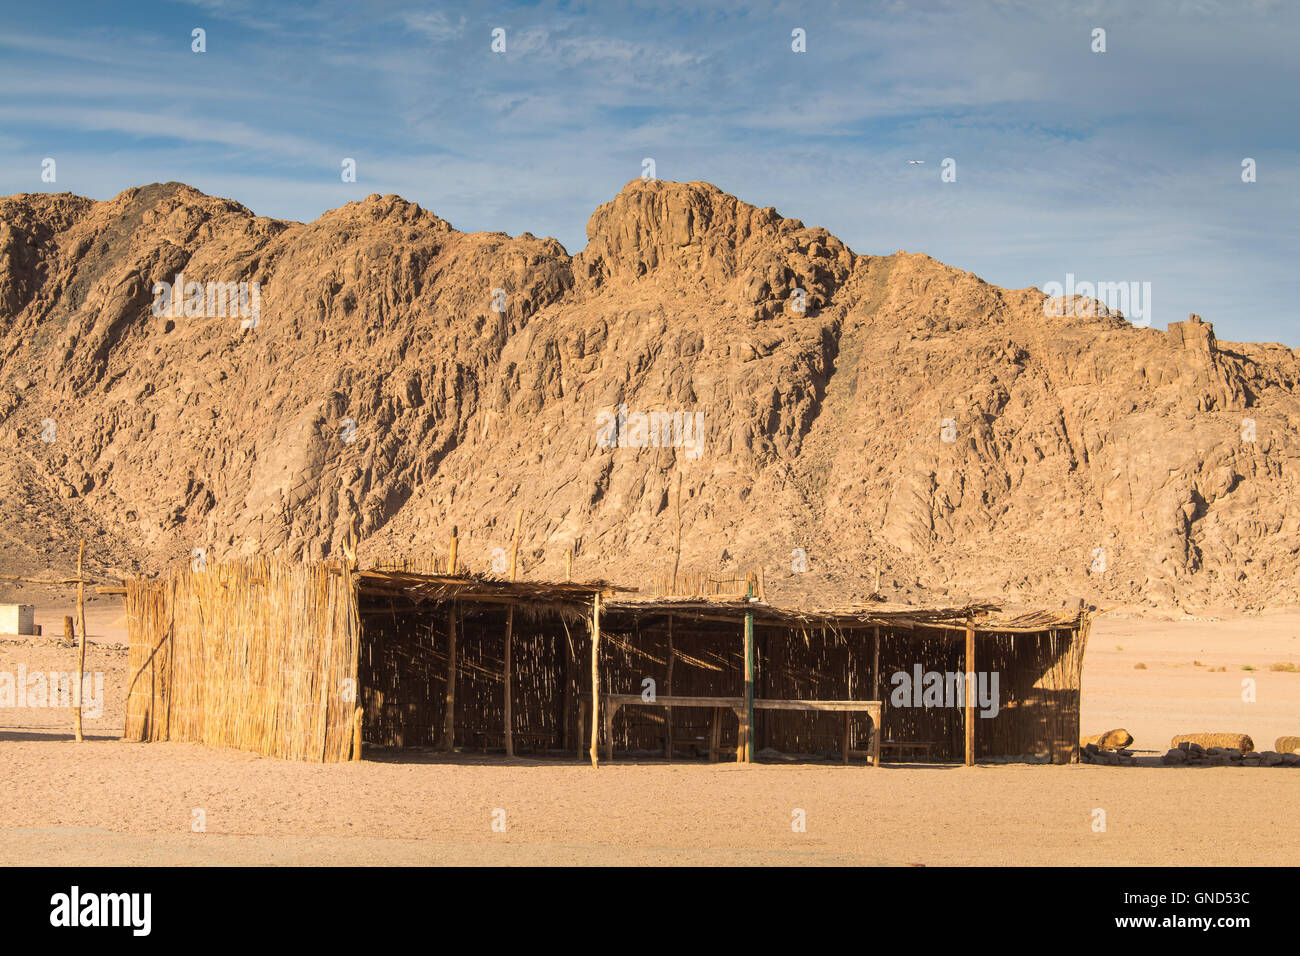 Rocky Mountains in den Sand Farbe in der Wüste in Ägypten. Beduinen, die Gebäude für die Gäste. Bewölkter Himmel. Stockfoto